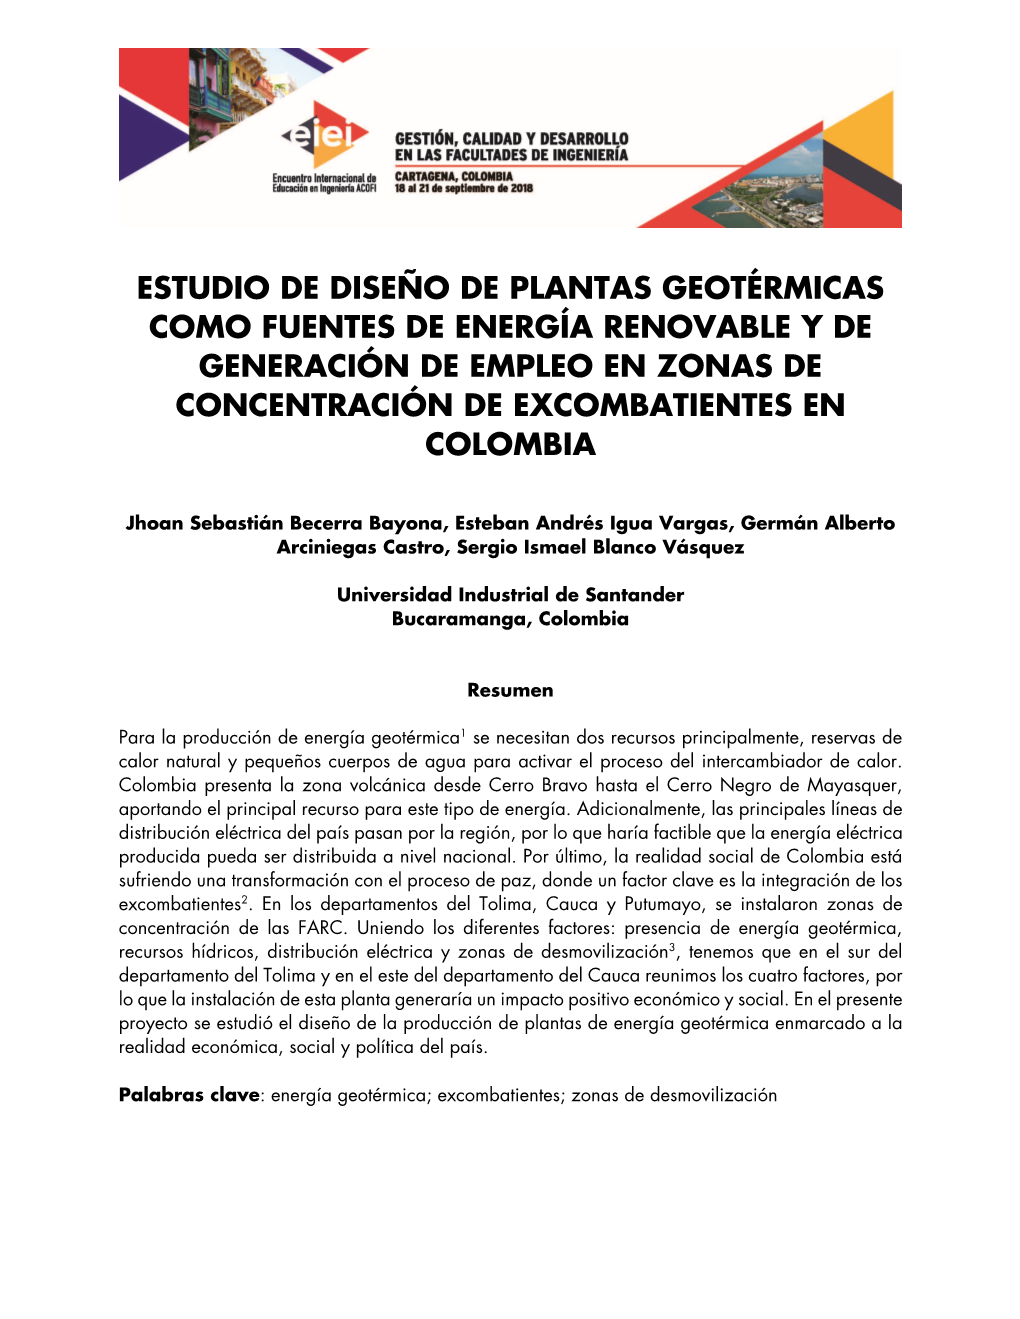 Estudio De Diseño De Plantas Geotérmicas Como Fuentes De Energía Renovable Y De Generación De Empleo En Zonas De Concentración De Excombatientes En Colombia